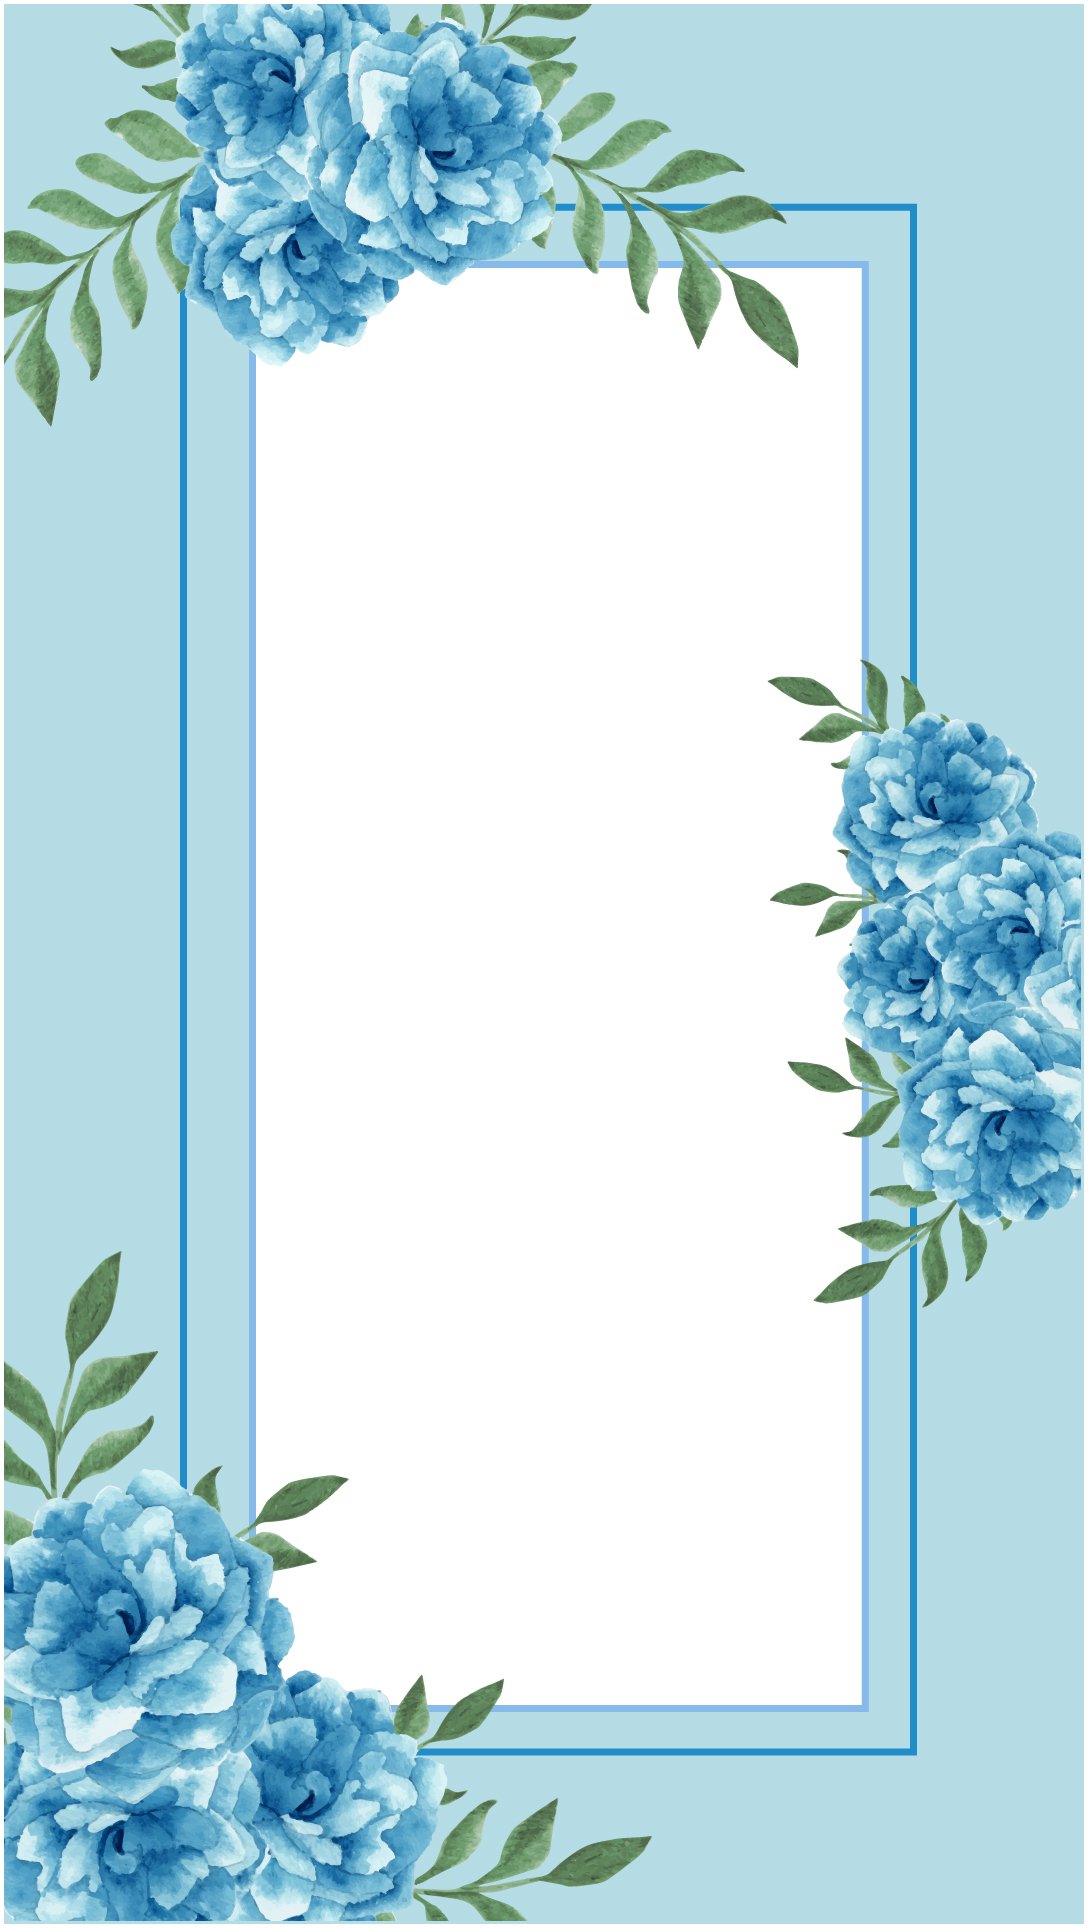 Free Blue Floral Frame Background - EPS, Illustrator, JPG, SVG